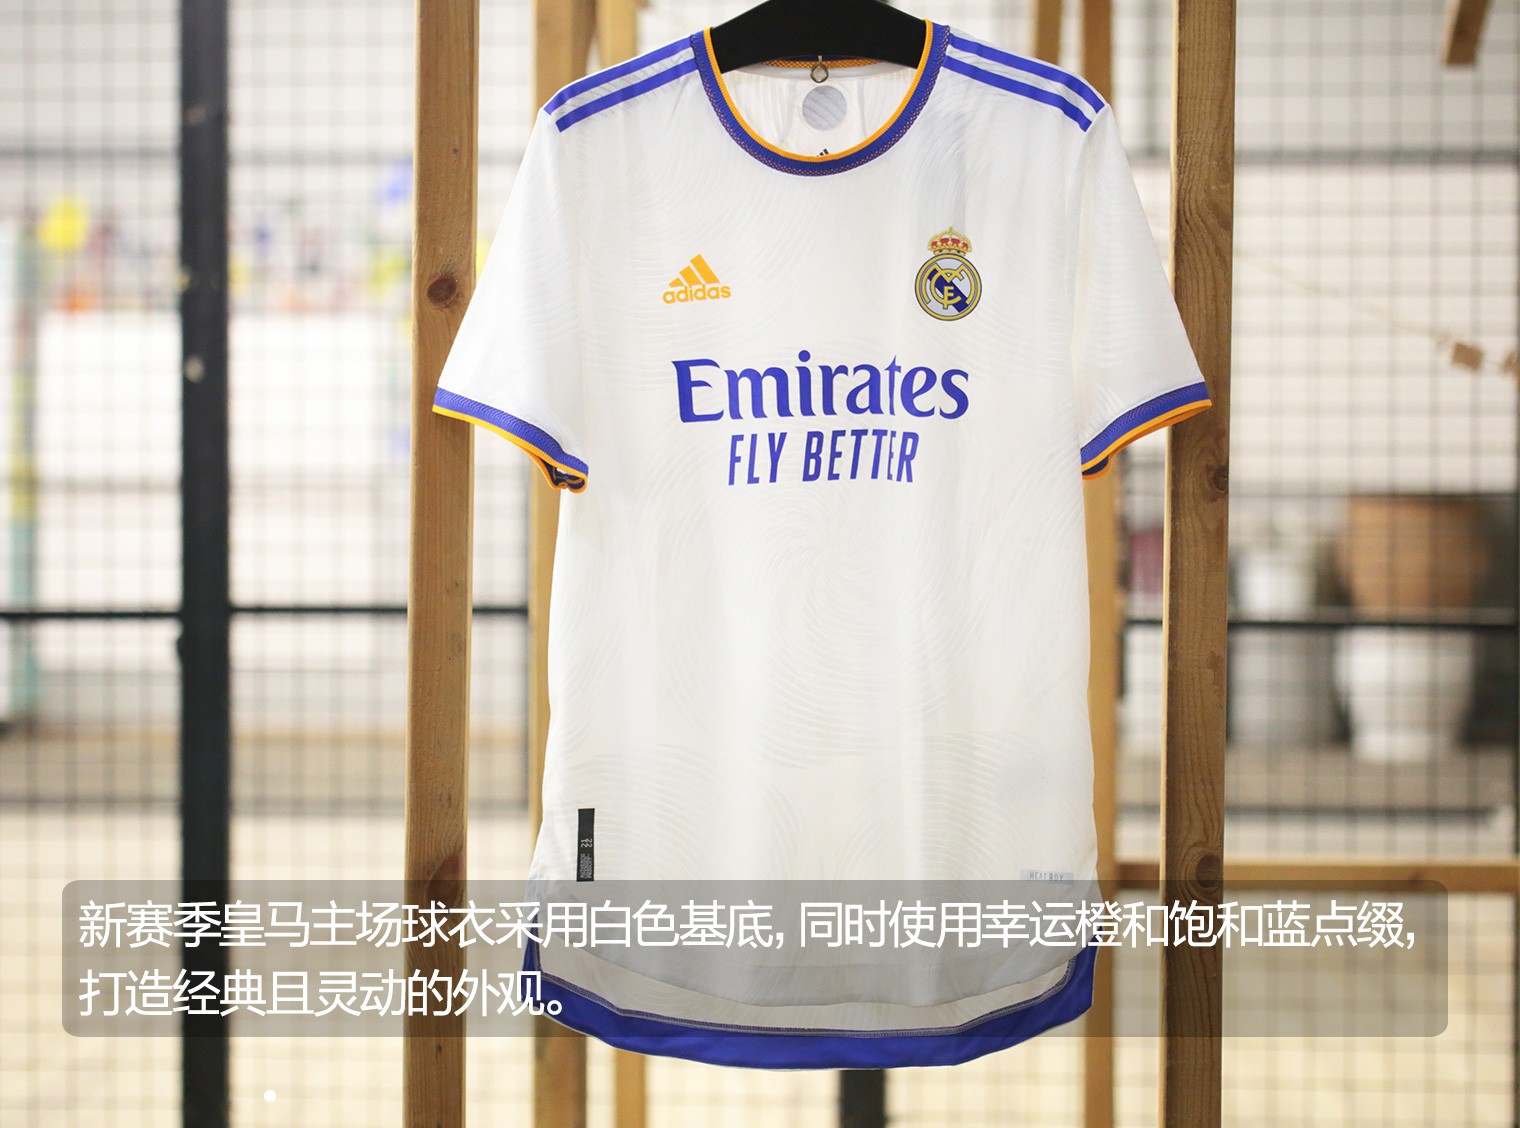 22赛季主场球衣球员版> 皇马全新主场球衣保持了一贯"白衣飘飘"的风格